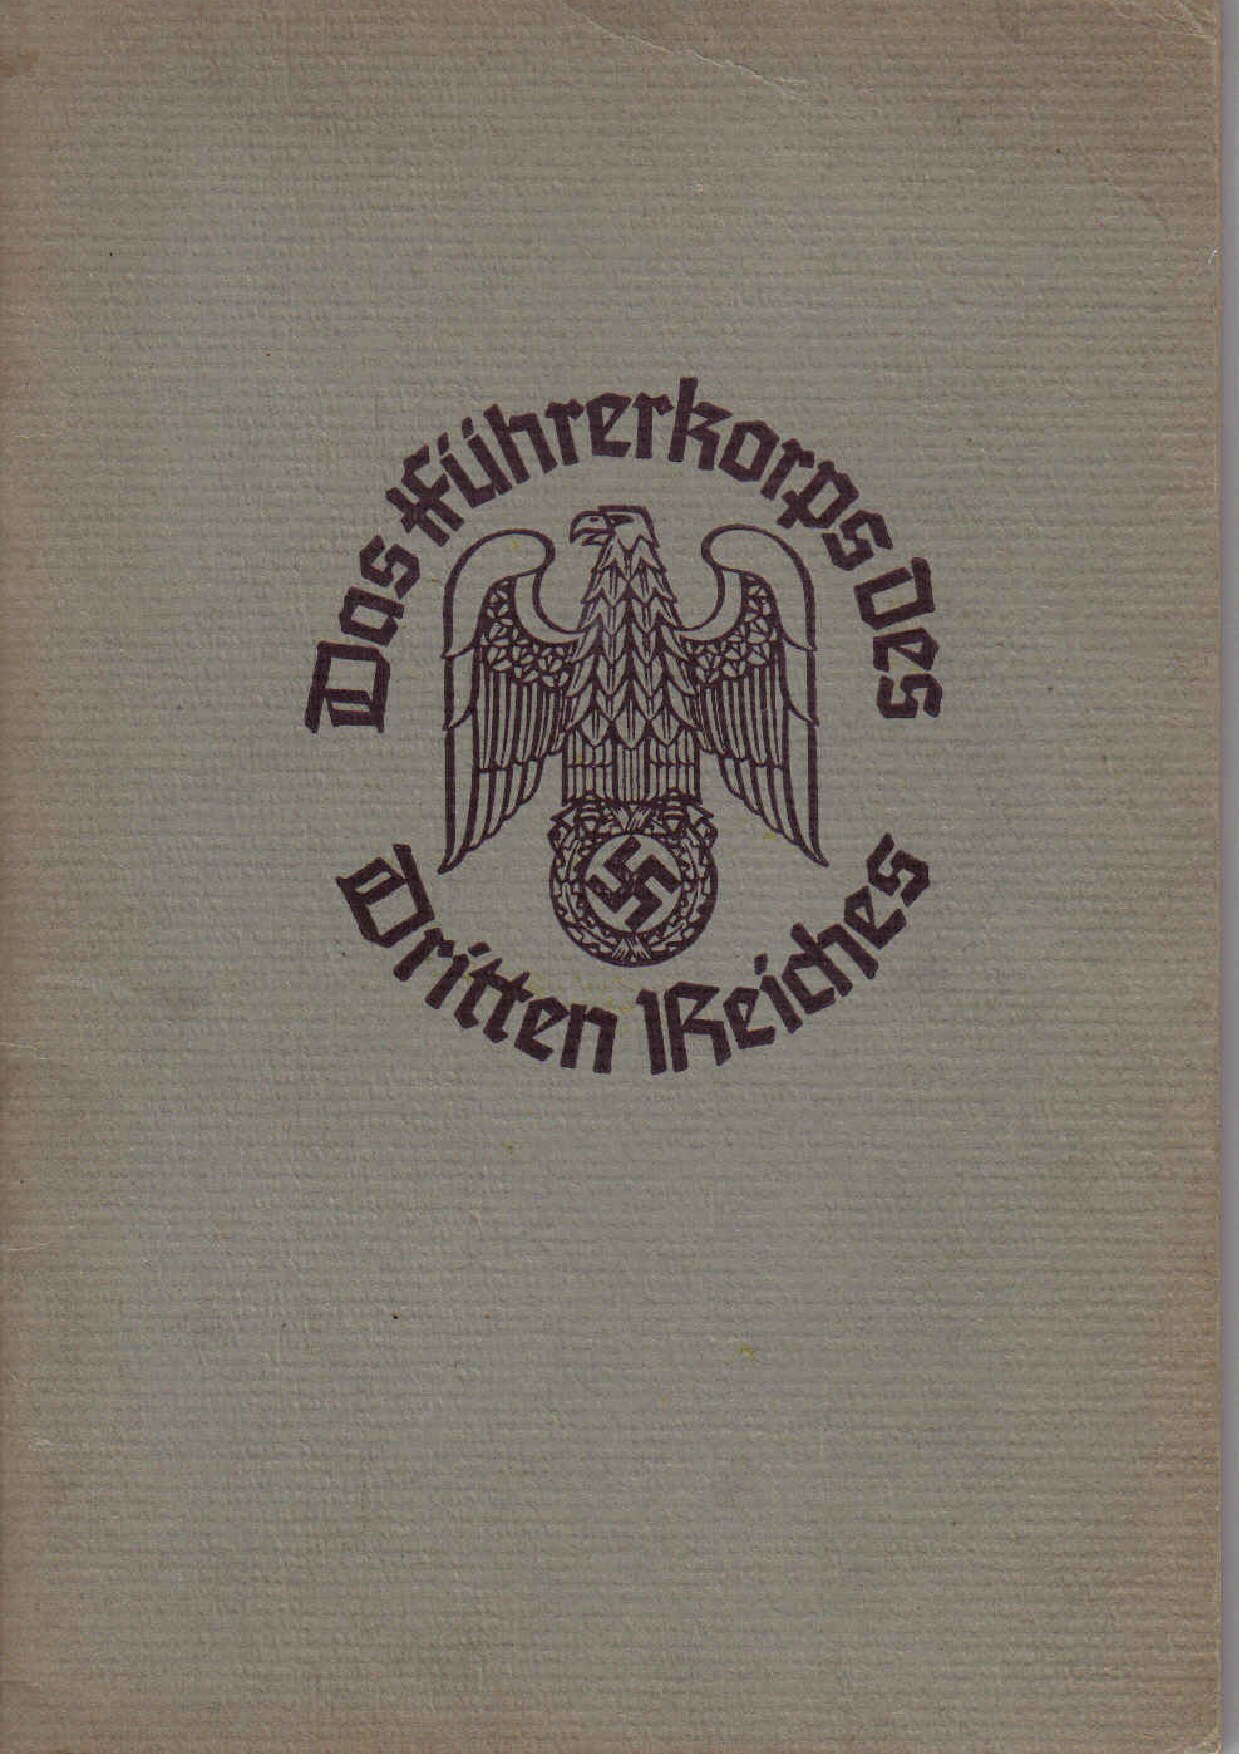 Das Führerkorps des Dritten Reiches (1937, 33 S., Scan)